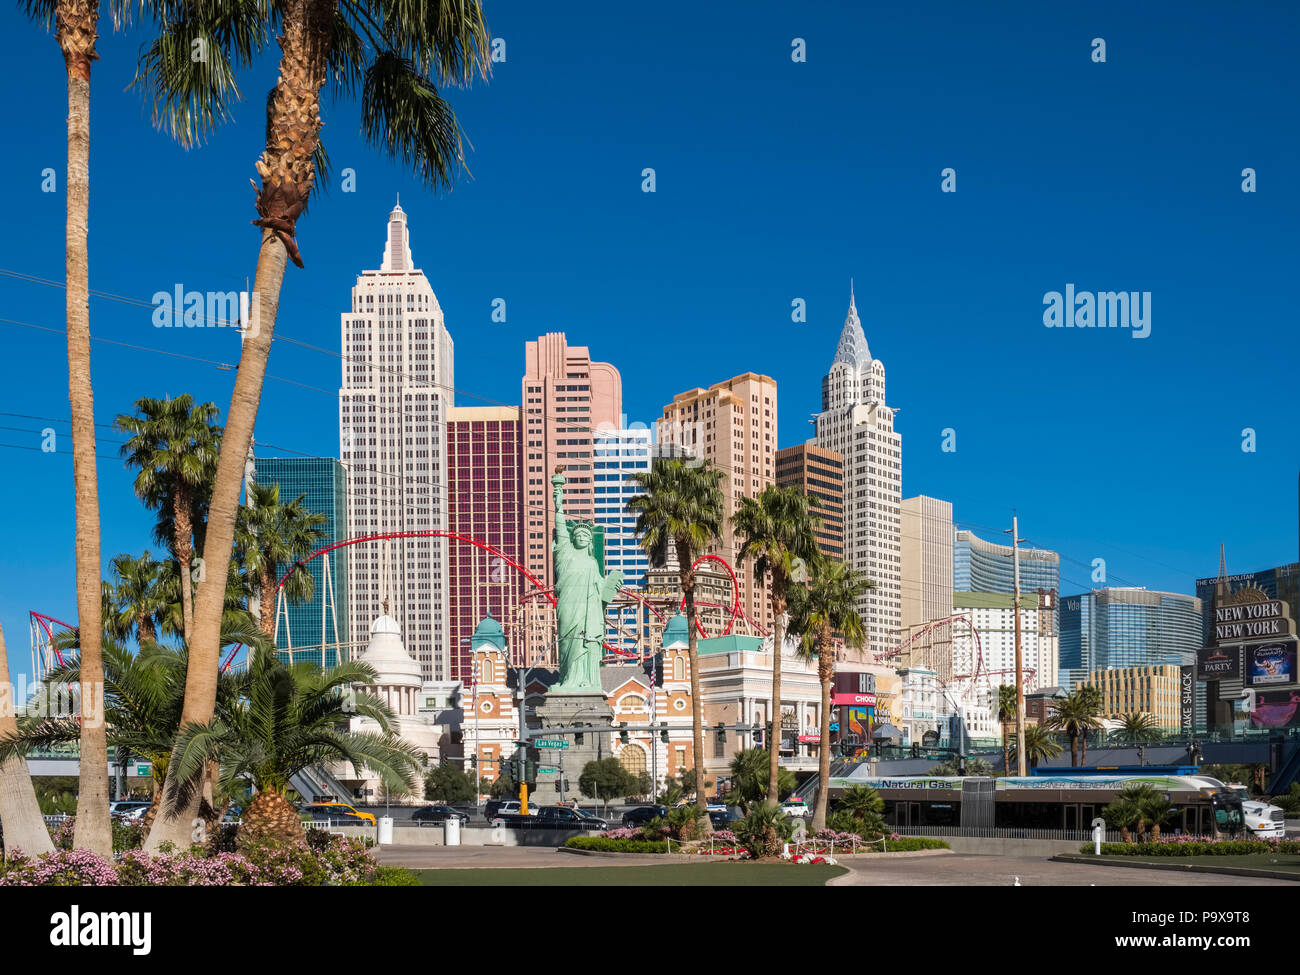 Der Las Vegas Boulevard, das New York New York Hotel And Casino Las Vegas, Nevada, USA Stockfoto